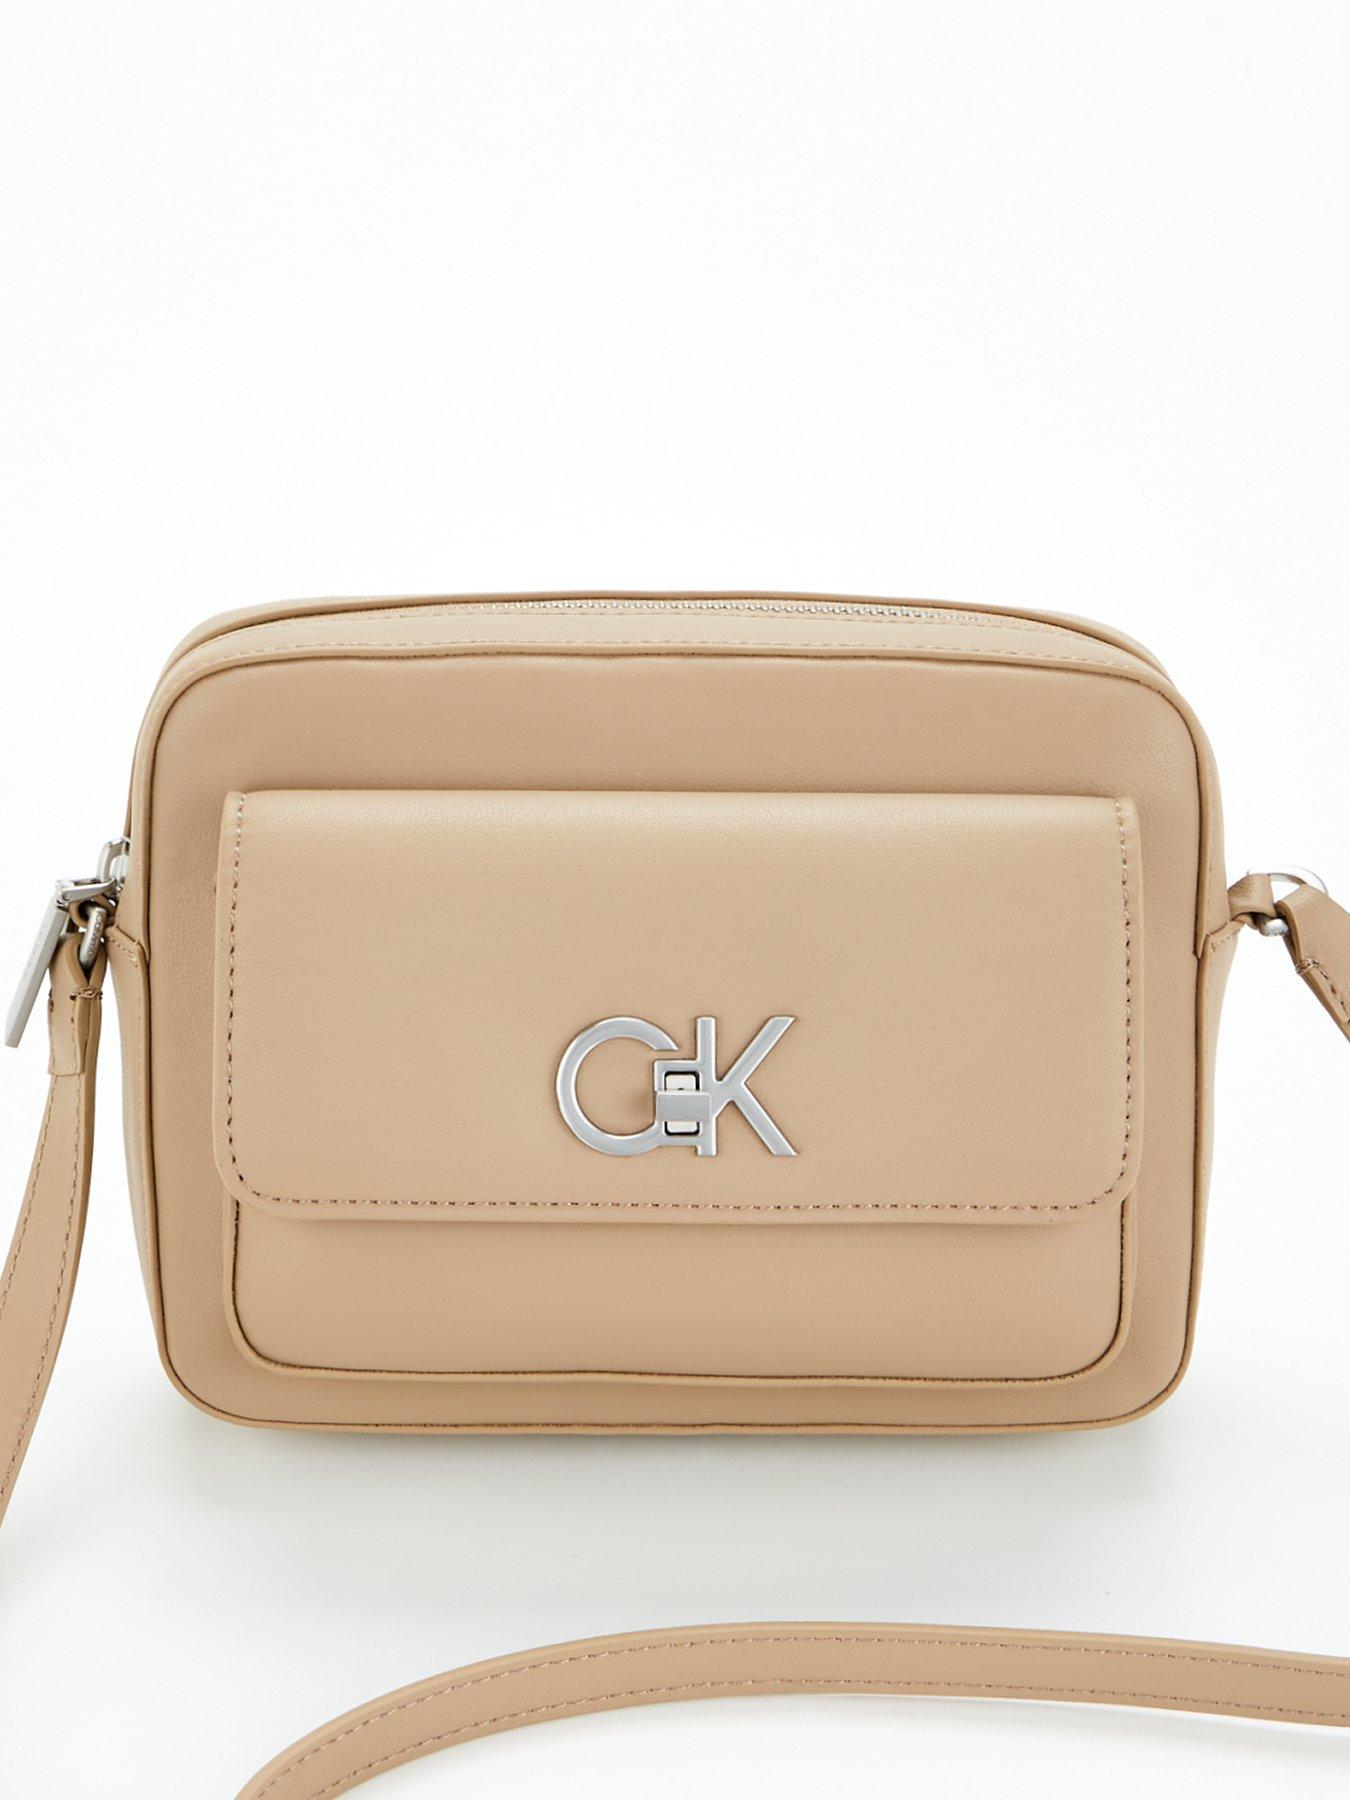 Calvin Klein | Bags | Calvin Klein Shoulder Bag | Poshmark